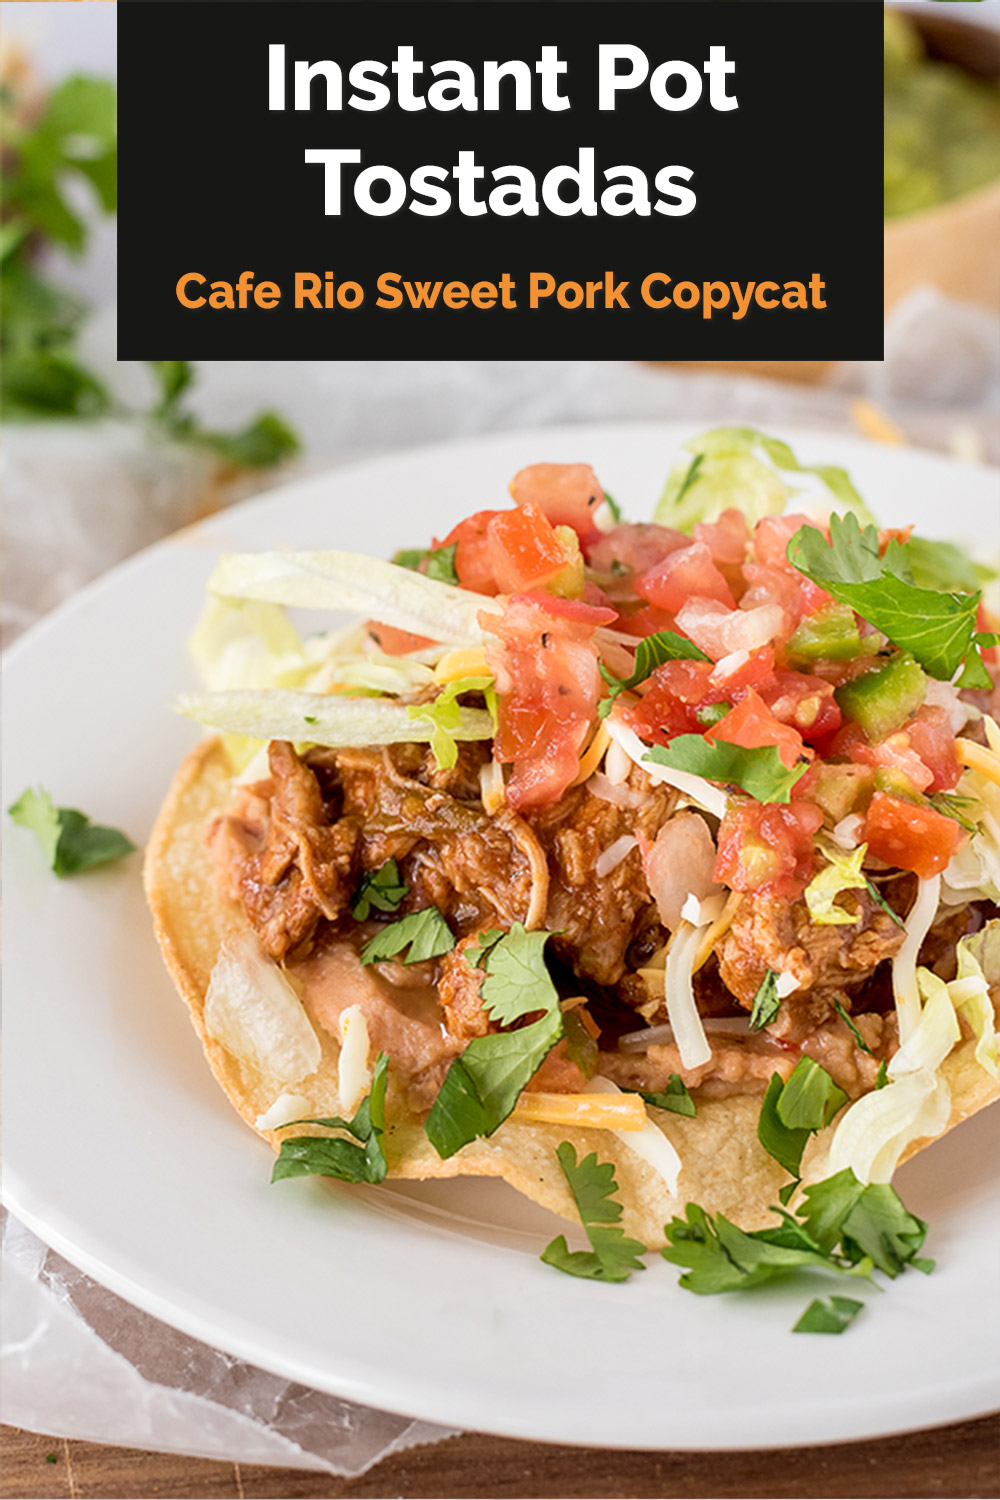 You can use this copycat Café Rio sweet pork recipe to make amazing tostadas, burritos, or salads in your Instant Pot. #pressurecookingtoday via @PressureCook2da